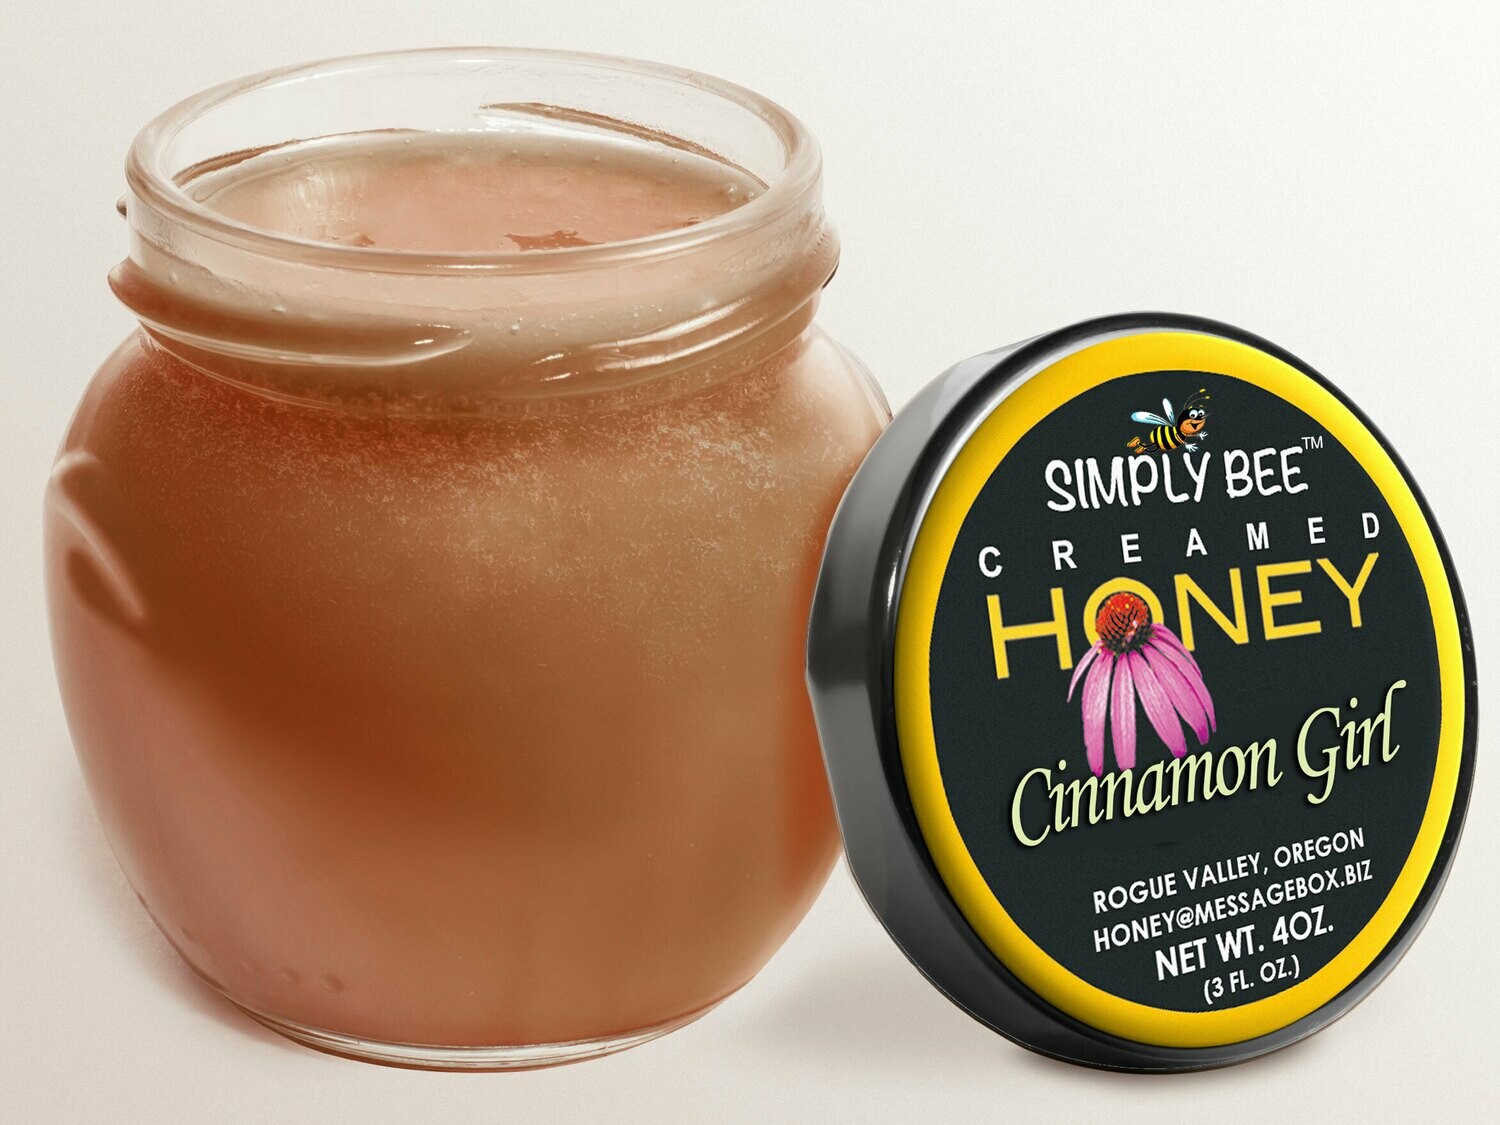 Cinnamon Girl Creamed Honey